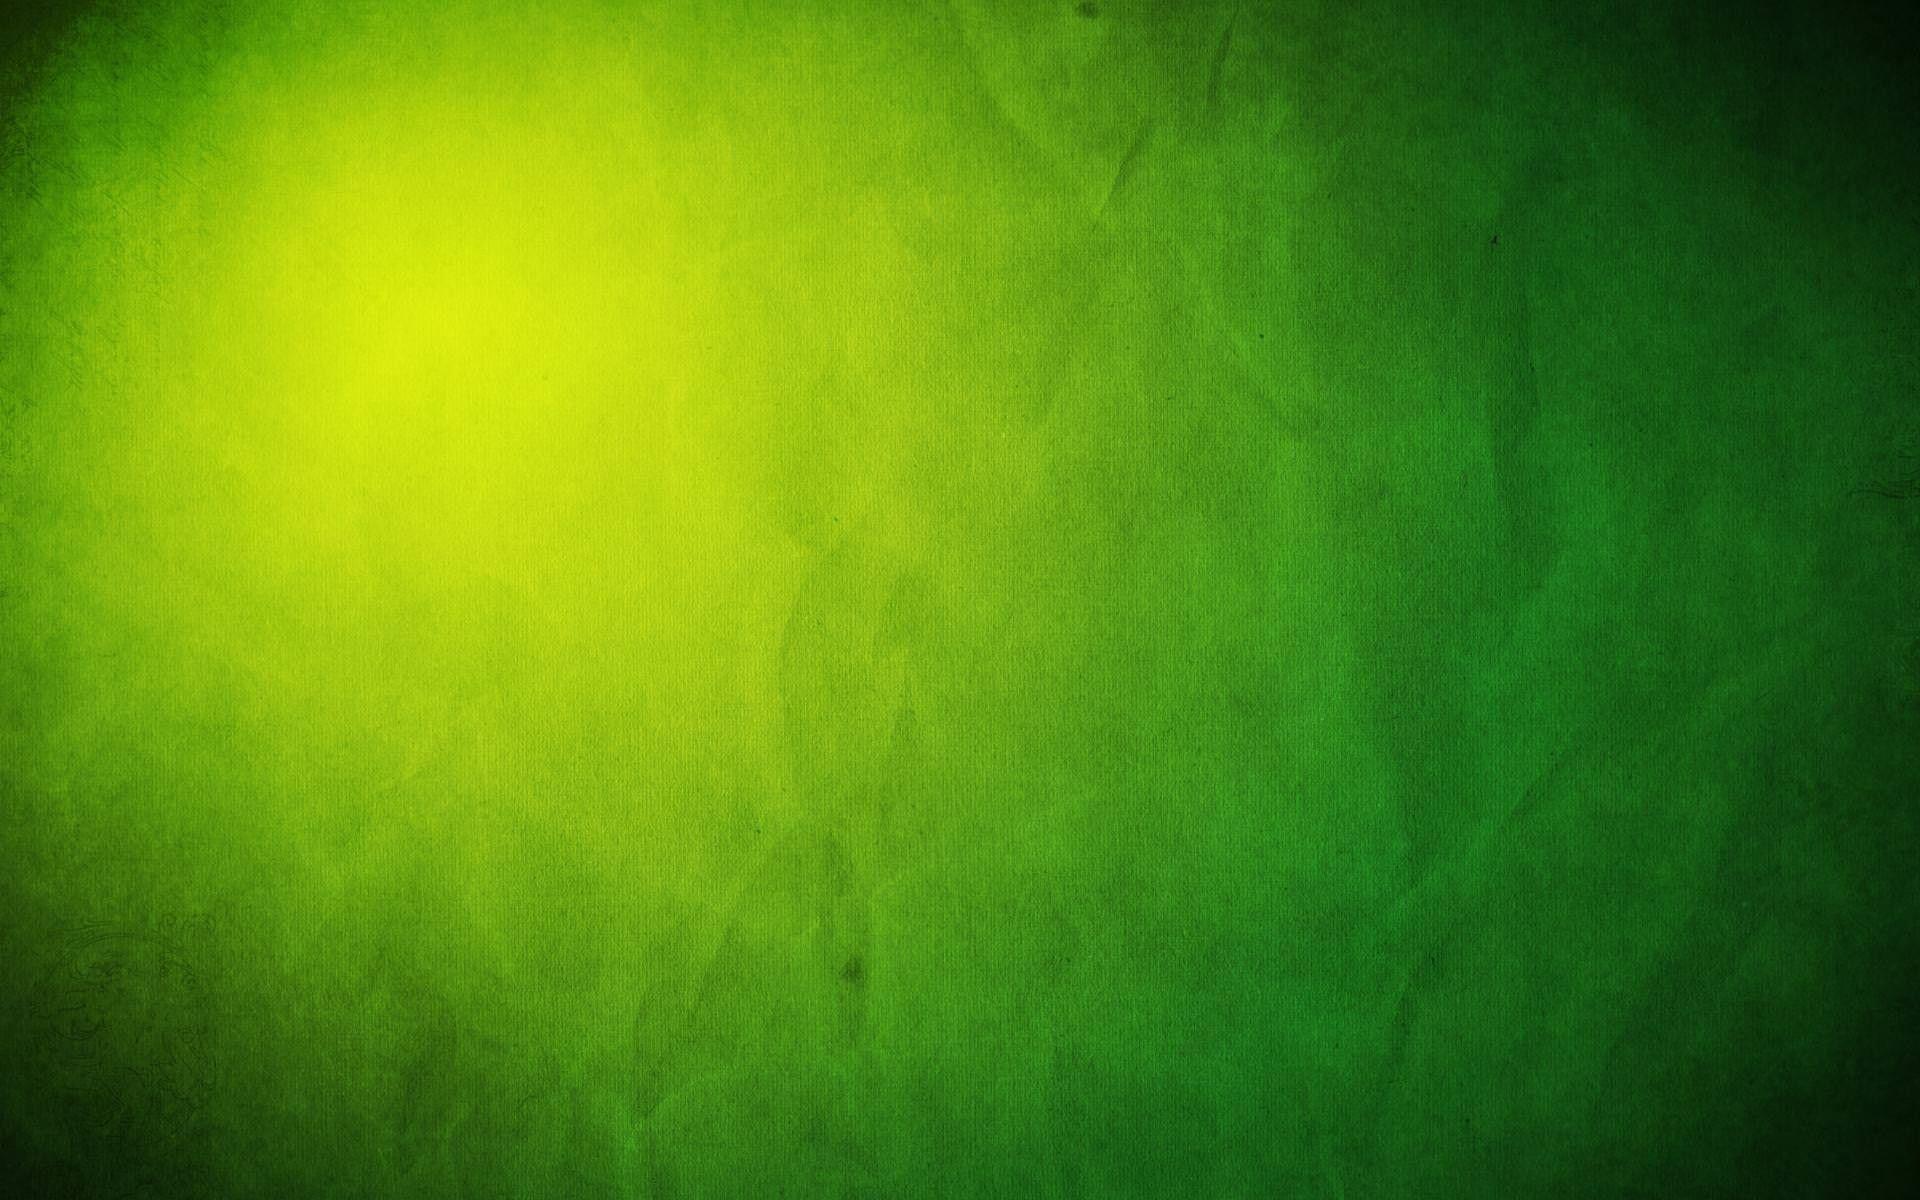 Nền xanh vòm xước (Green grunge wallpaper): Nếu bạn thích những hình nền có phong cách trẻ trung, thì nền xanh vòm xước chắc chắn sẽ là lựa chọn phù hợp. Hãy xem hình ảnh để chiêm ngưỡng và thưởng thức sự thú vị của hình nền này nhé!